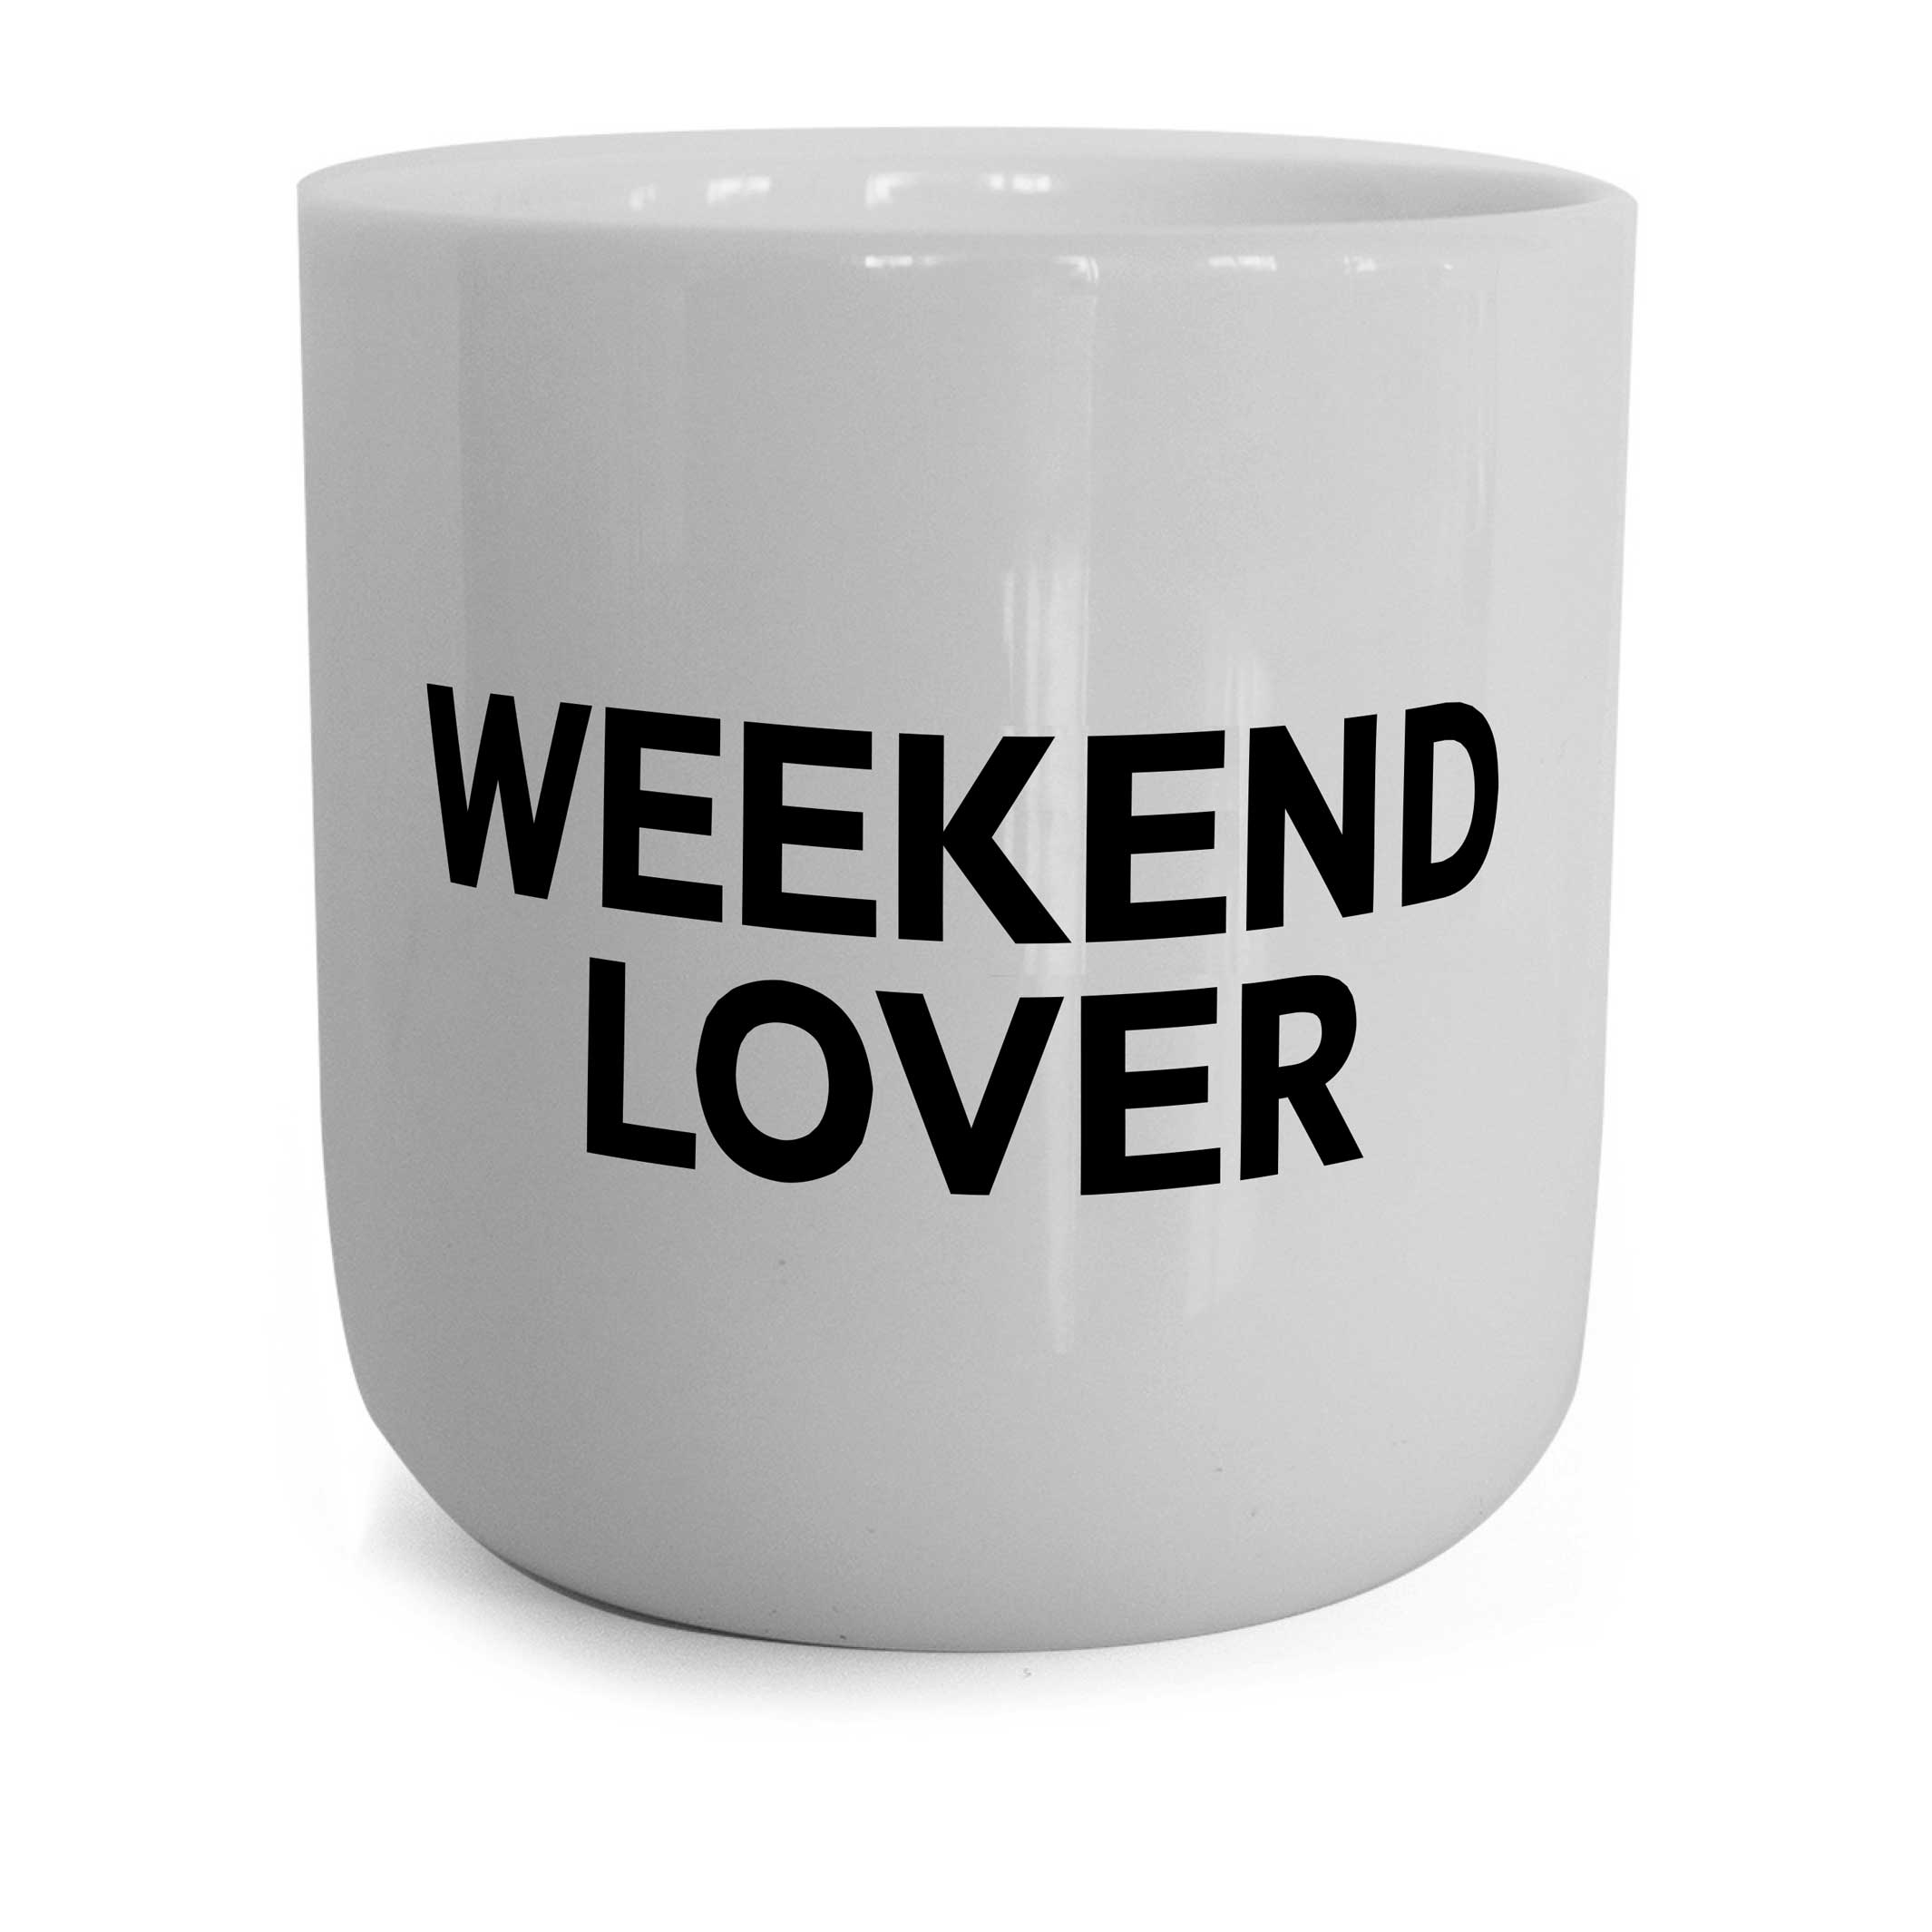 WEEKENDLOVER | weisser Kaffee- & Tee-BECHER mit schwarzer Typo | Lyrics Serie | PLTY